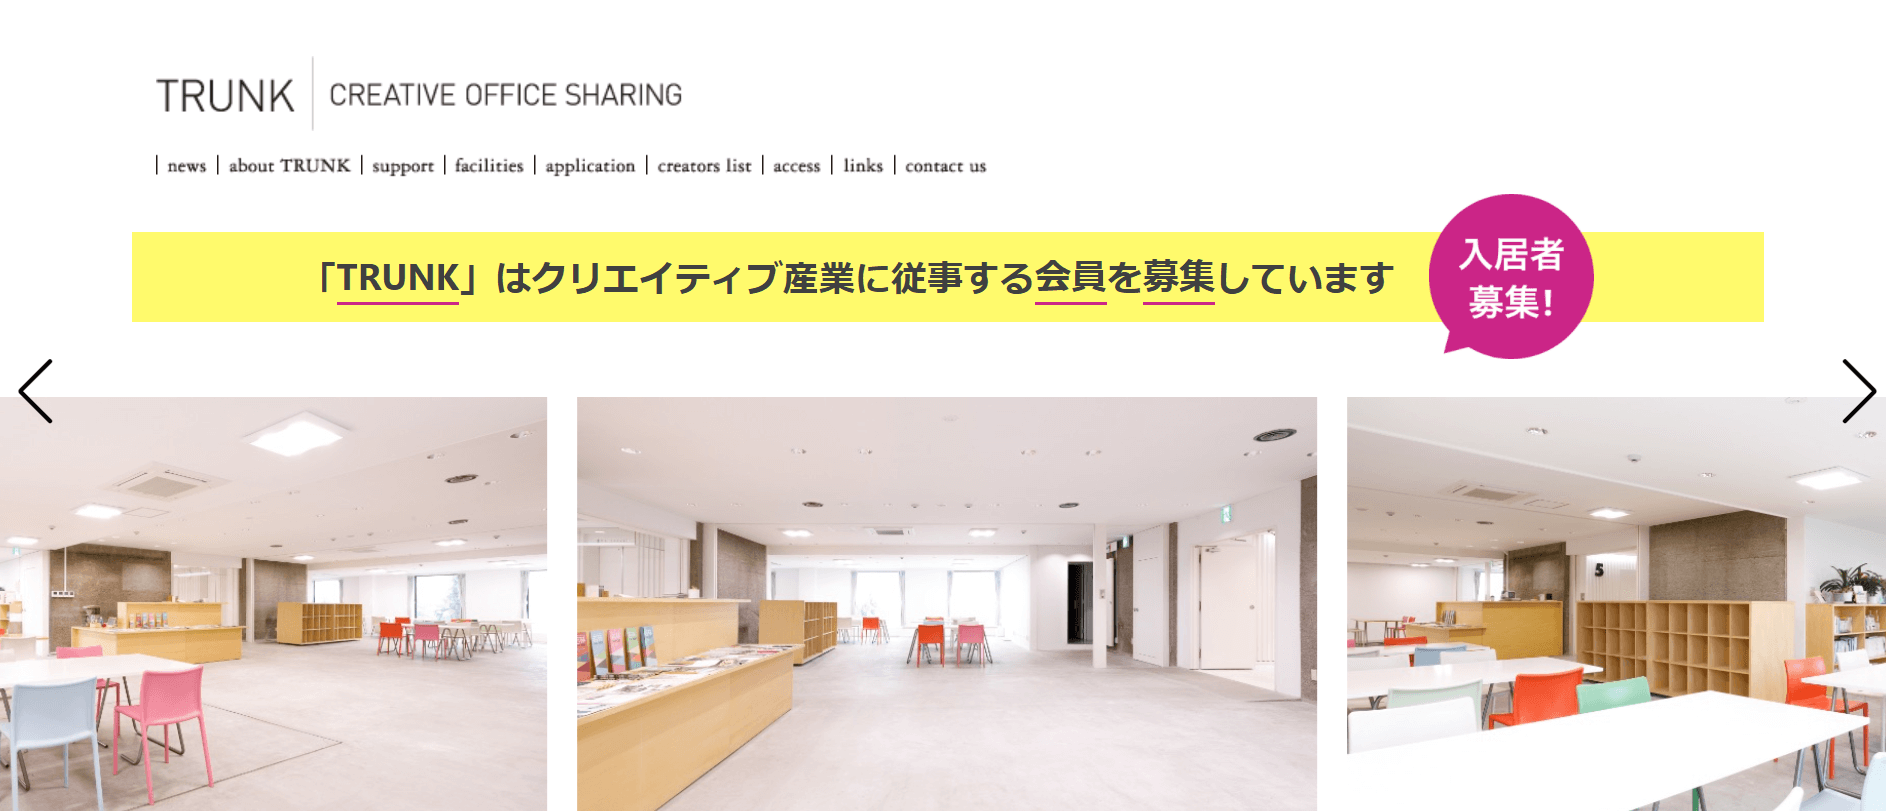 仙台市若林区にある人気・おすすめの格安コワーキングスペースTRUNK-Creative Office Sharing-